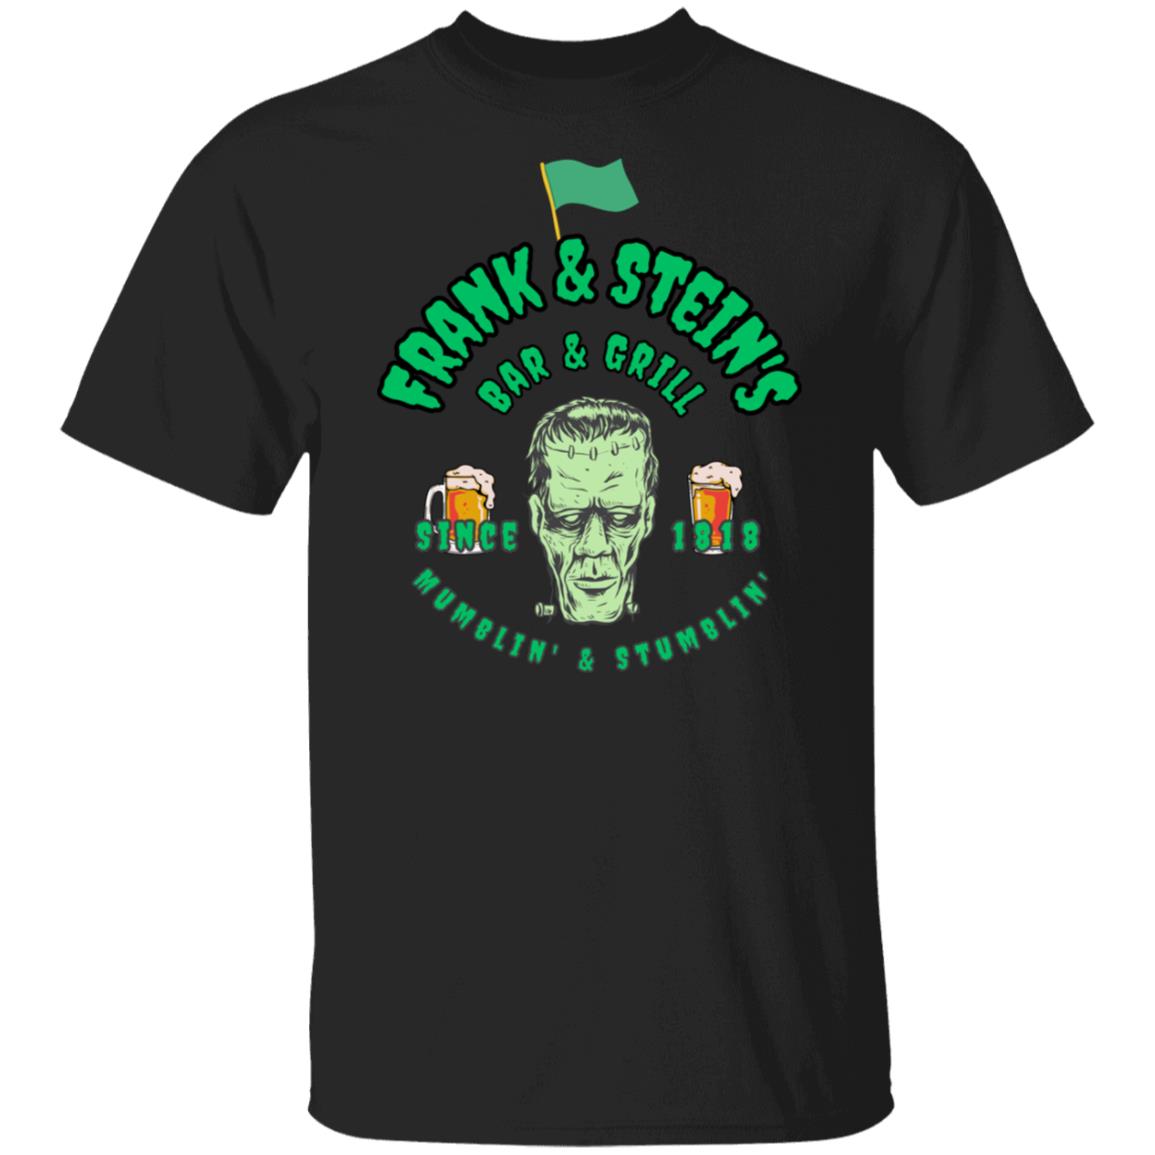 Frank & Stein's Bar & Grill T Shirt Halloween T-Shirt